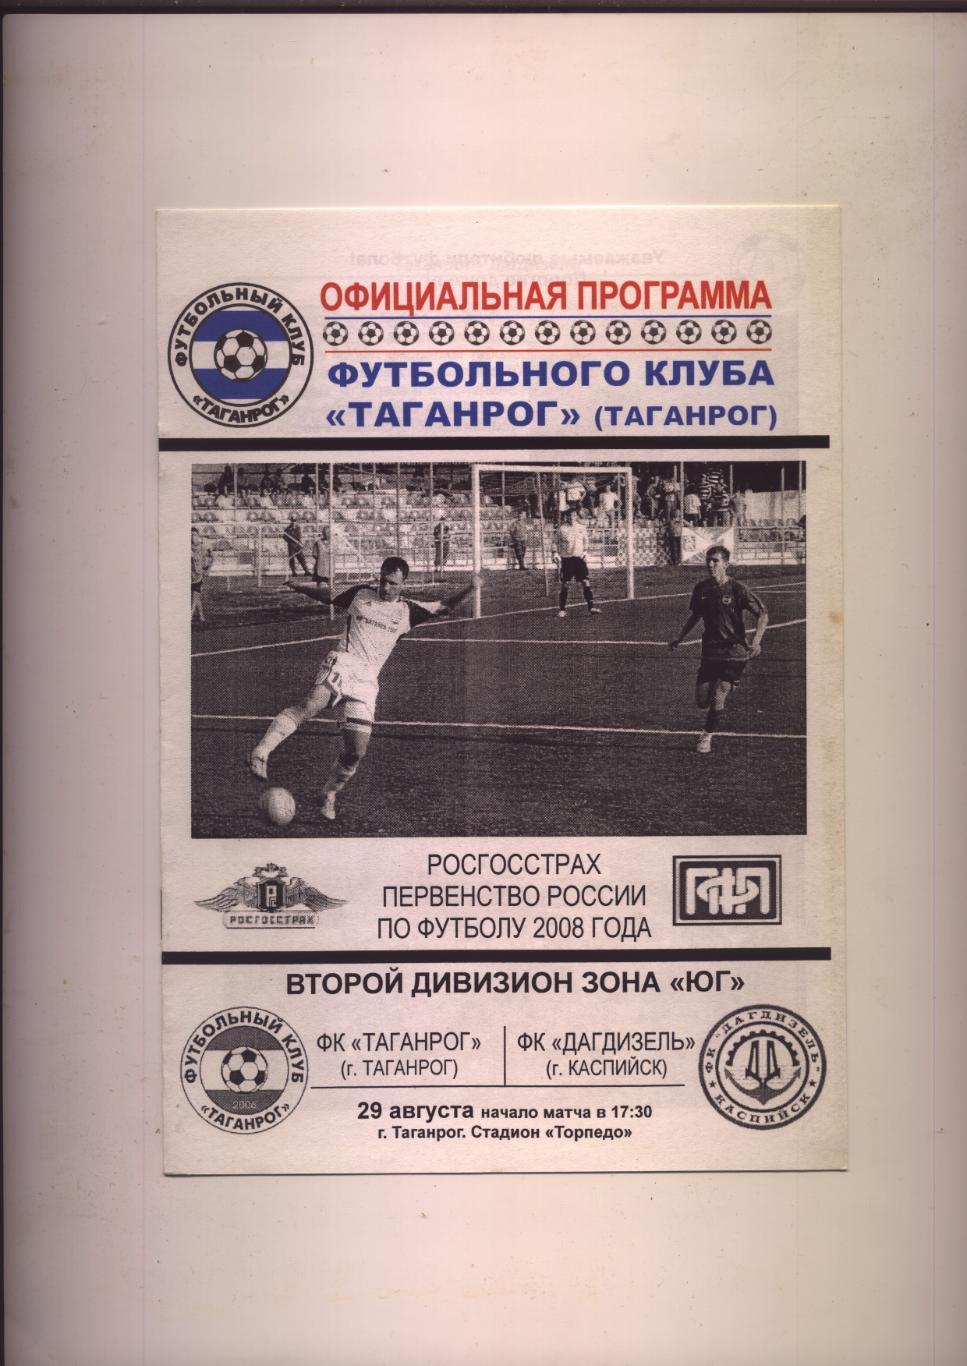 Программа Футбол Первенство России ФК Таганрог - Дагдизель Каспийск 29 08 2008